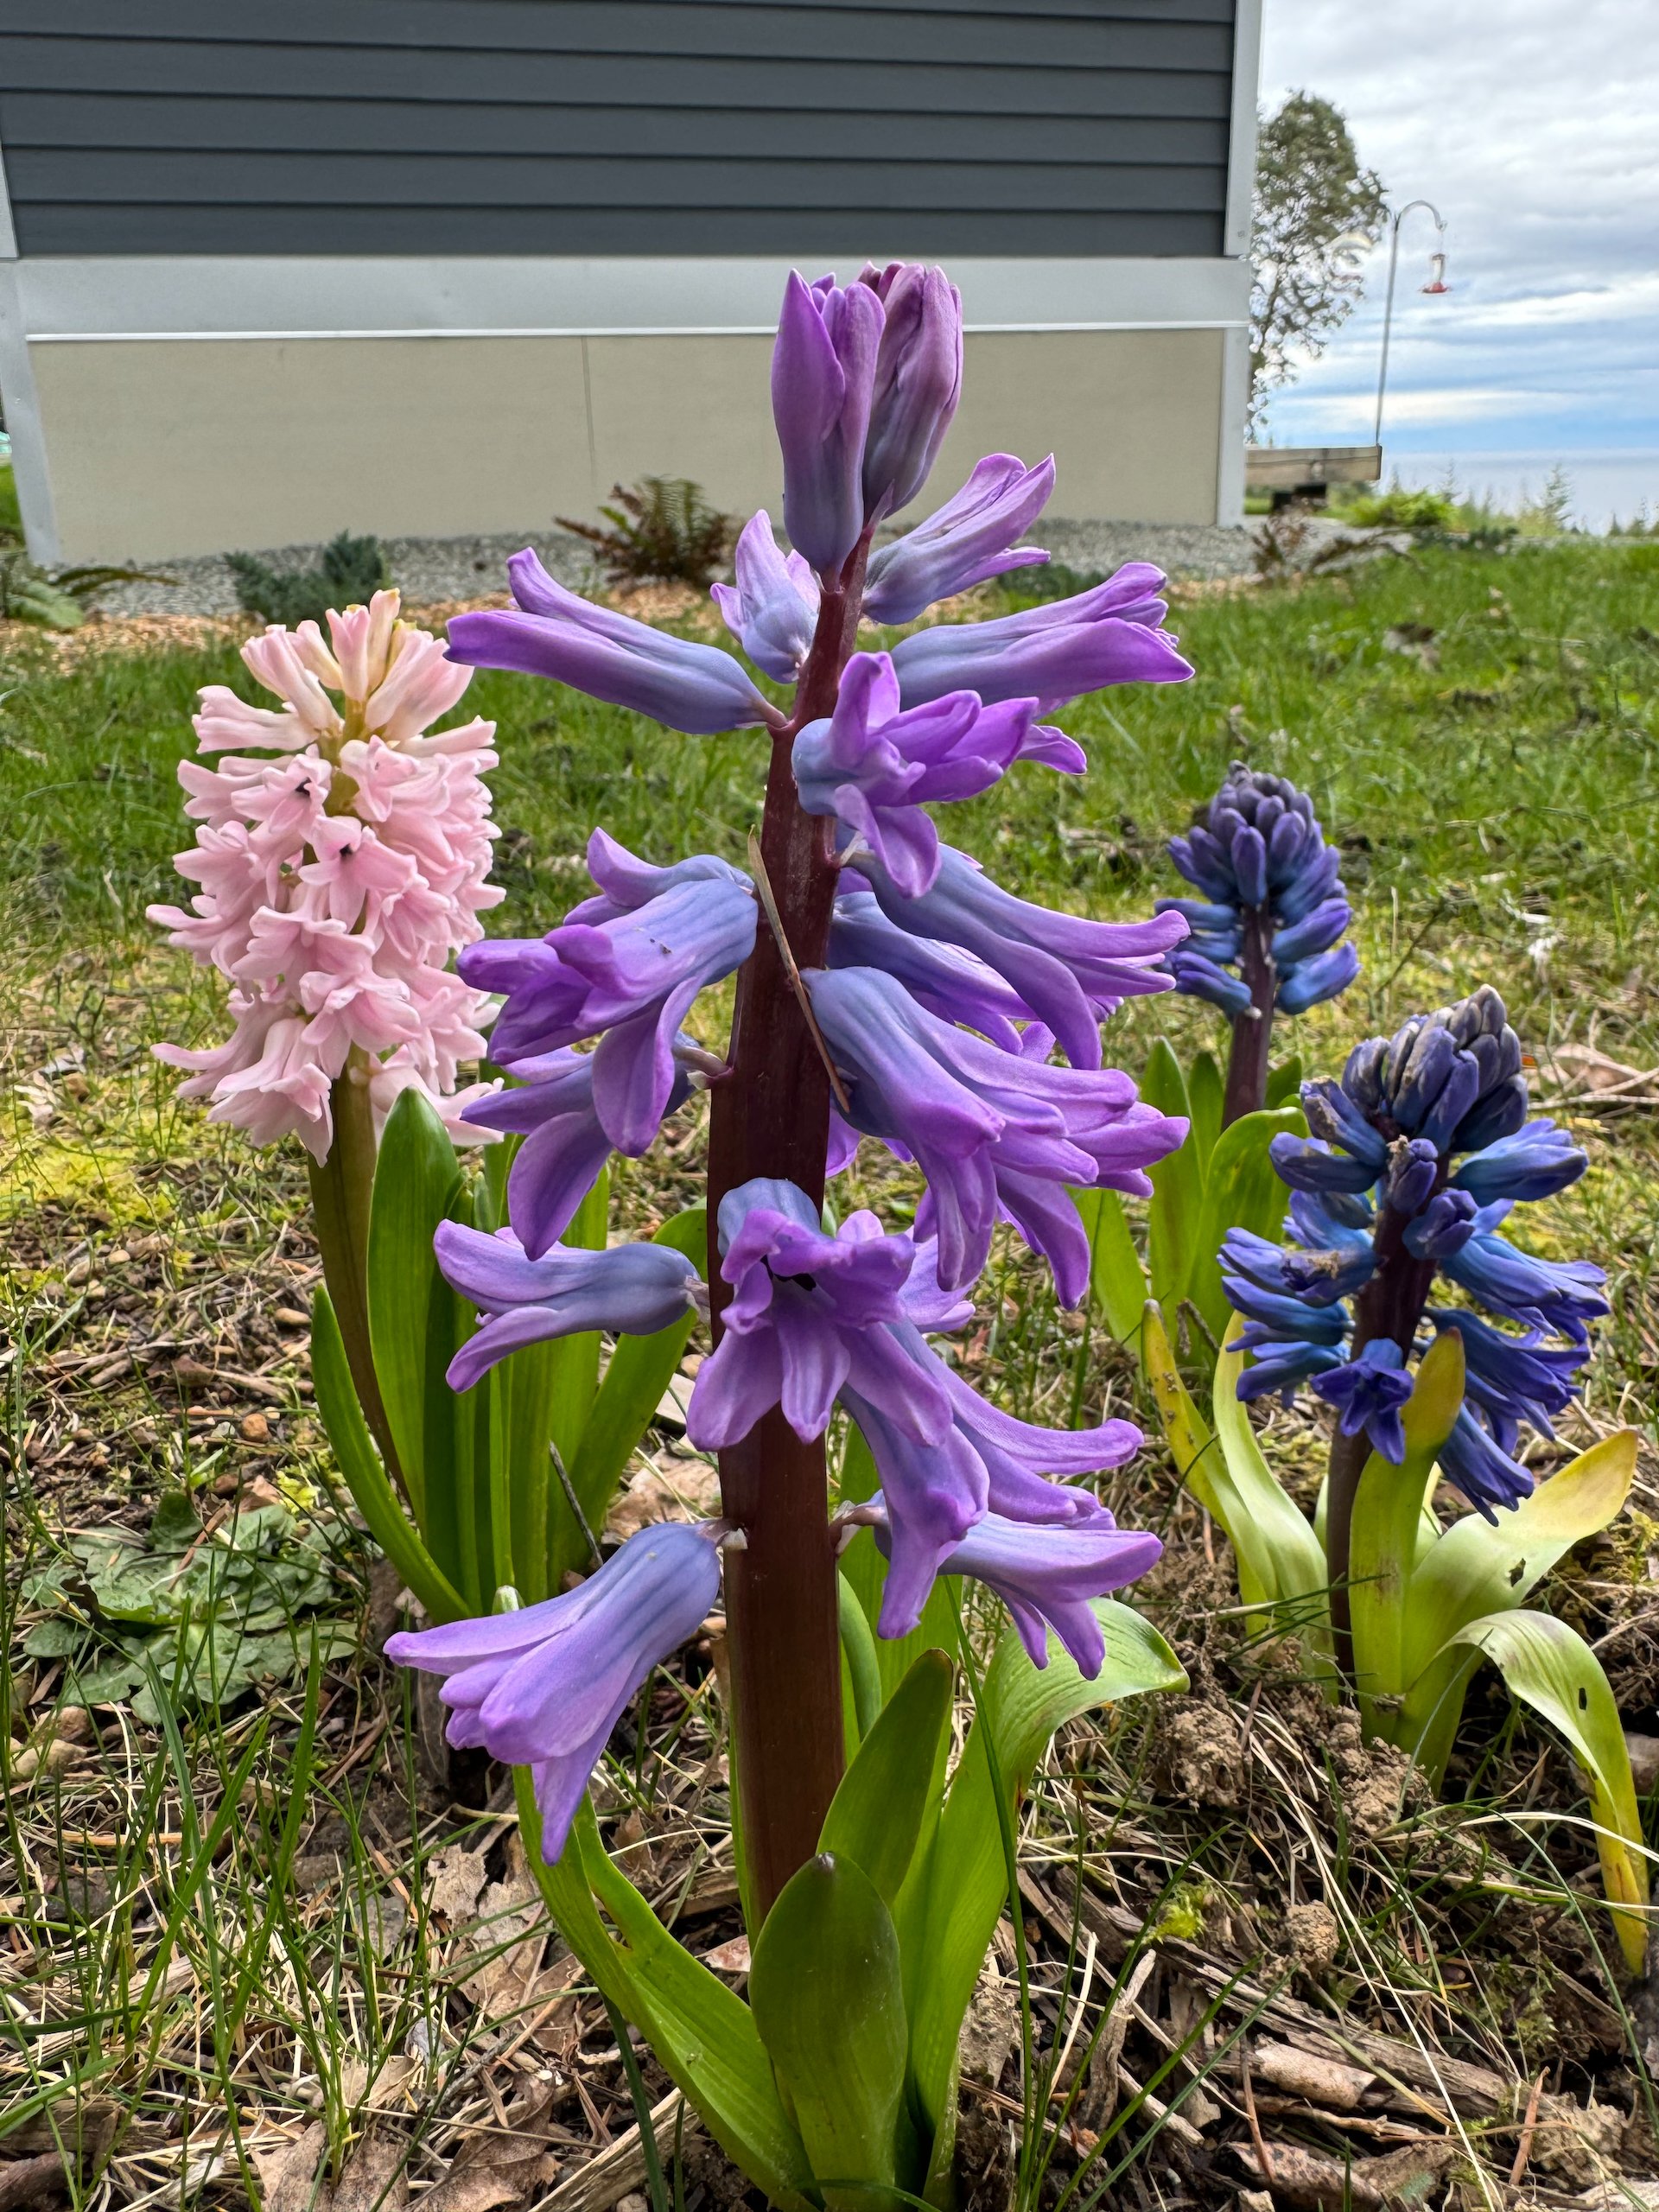  Some cool hyacinths on Galiano.  